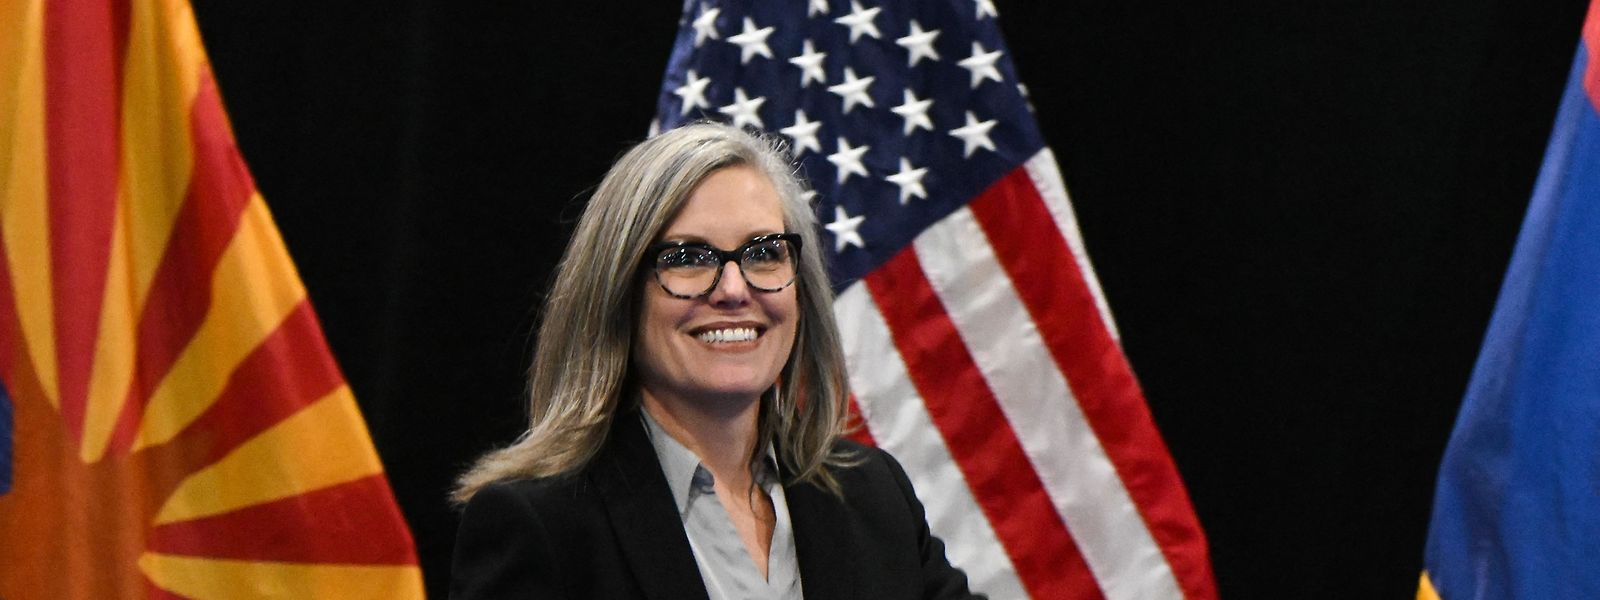 Die Demokratin Katie Hobbs hat die umkämpfte Gouverneurswahl im US-Bundesstaat Arizona nach Prognosen gewonnen.